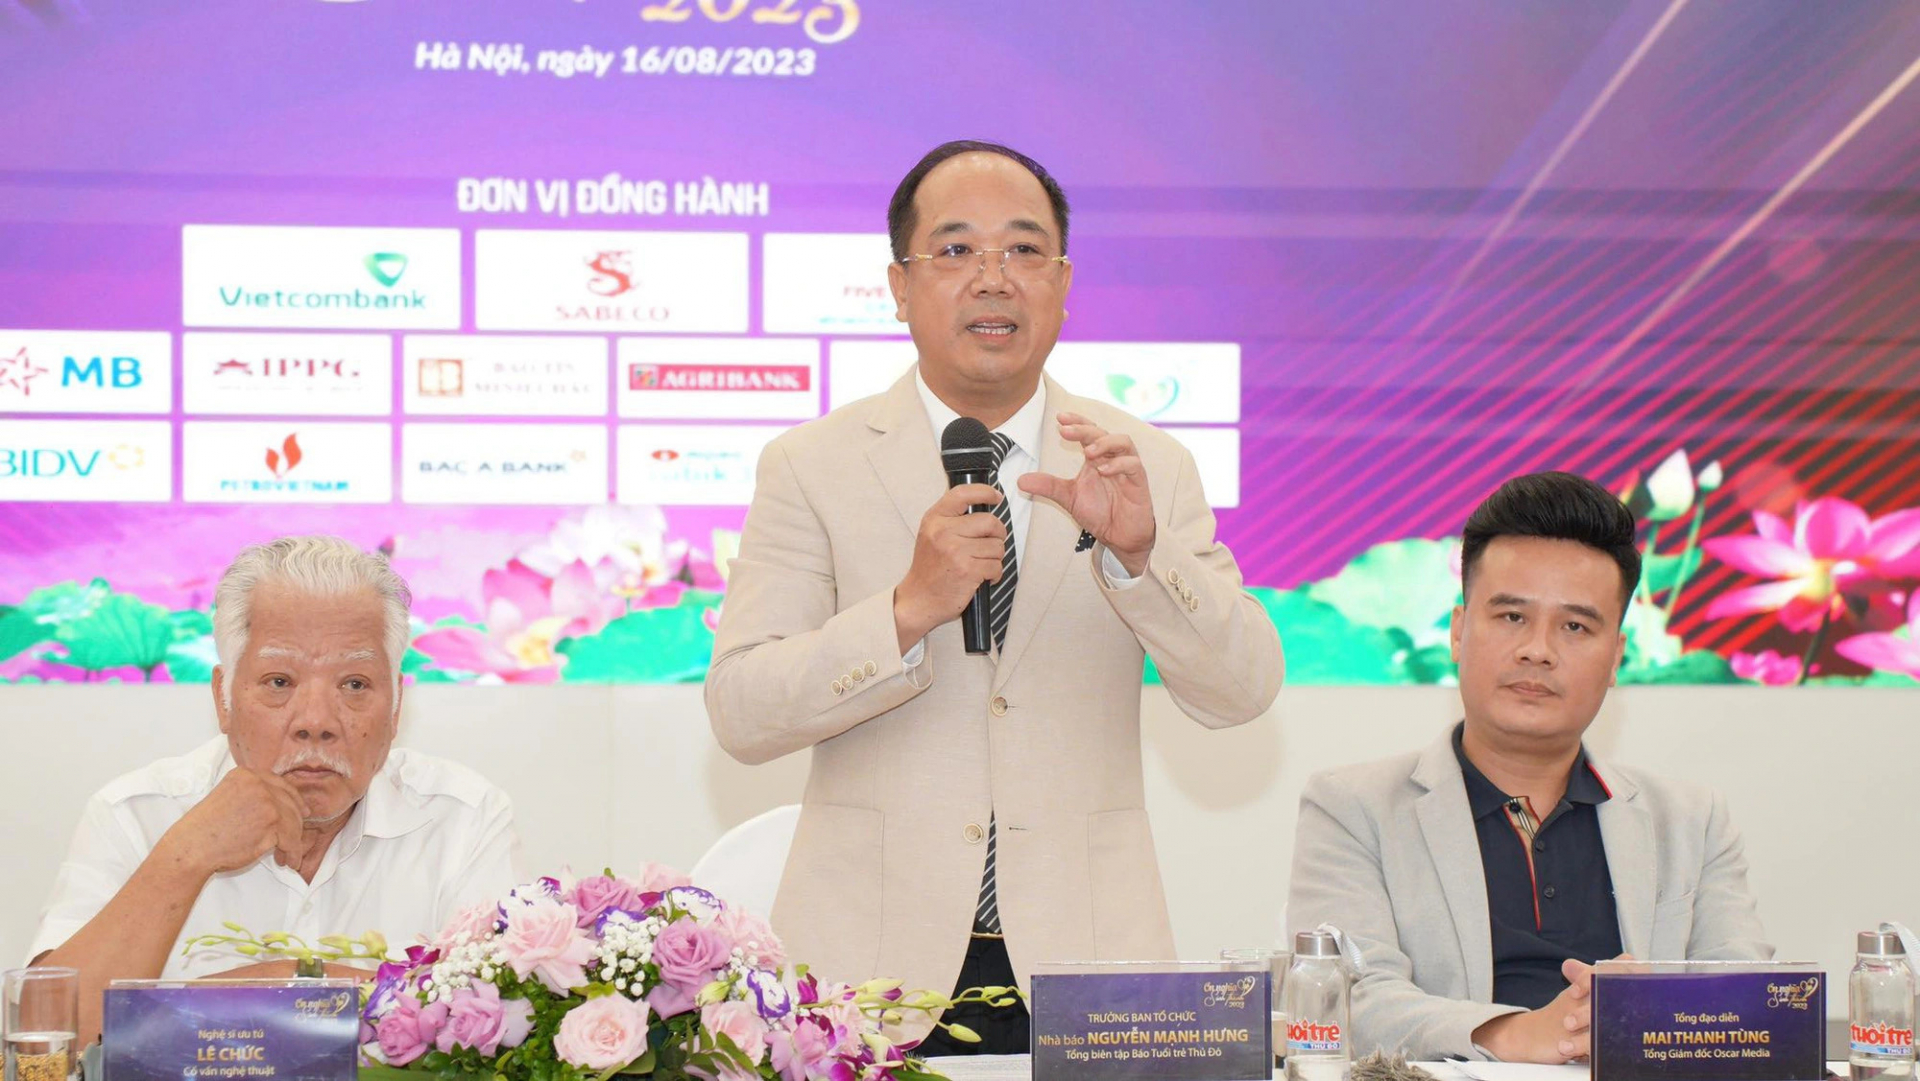 Tổng biên tập báo Tuổi Trẻ Thủ Đô Nguyễn Mạnh Hưng cho biết chương trình tiếp tục phát vé miễn phí tới các đoàn viên, thanh niên, các bậc cha mẹ